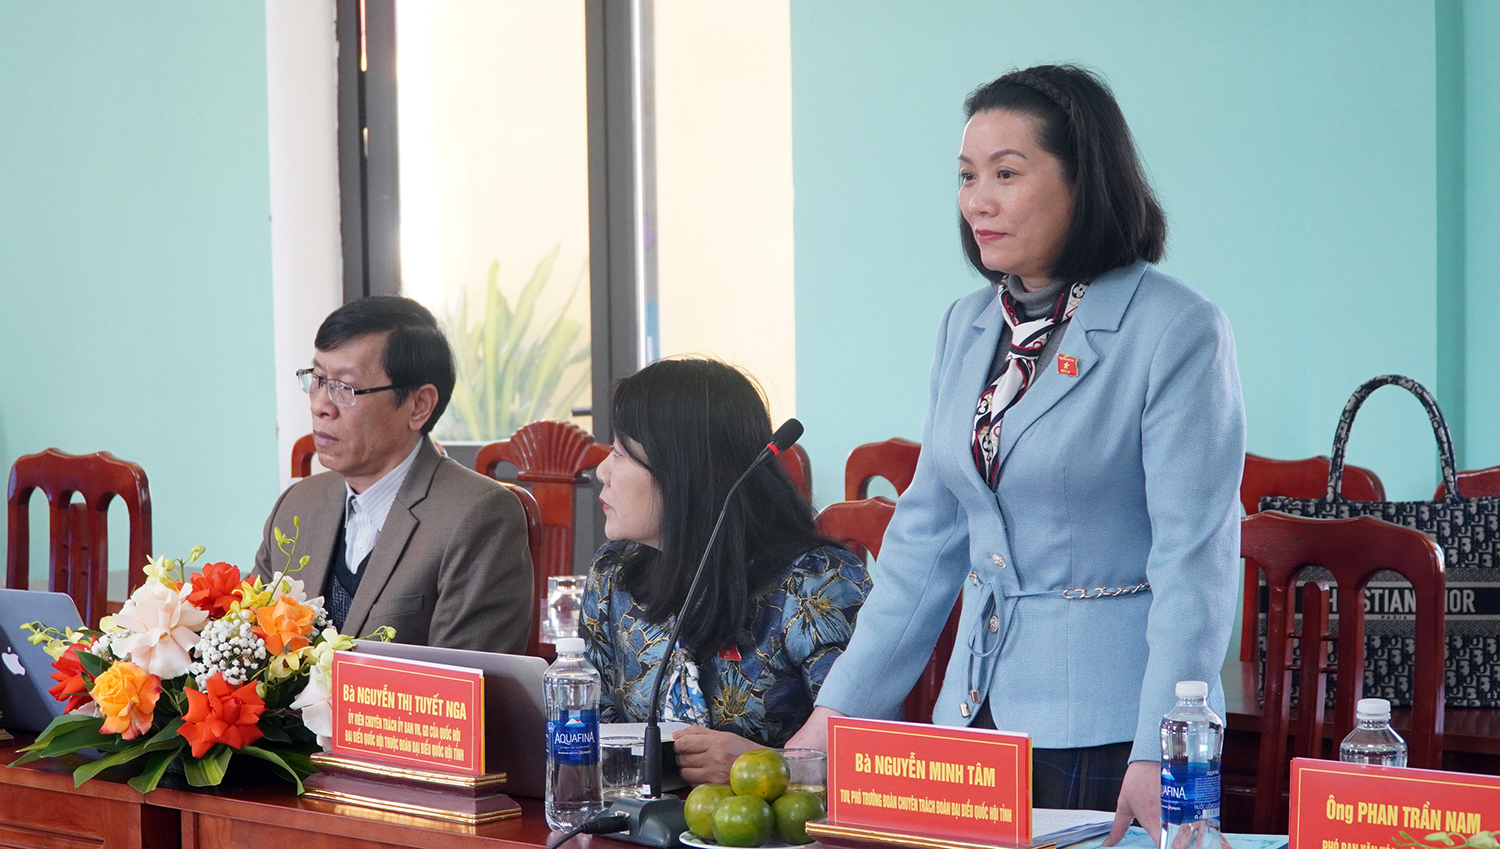 Đại biểu Nguyễn Minh Tâm kết luận buổi giám sát